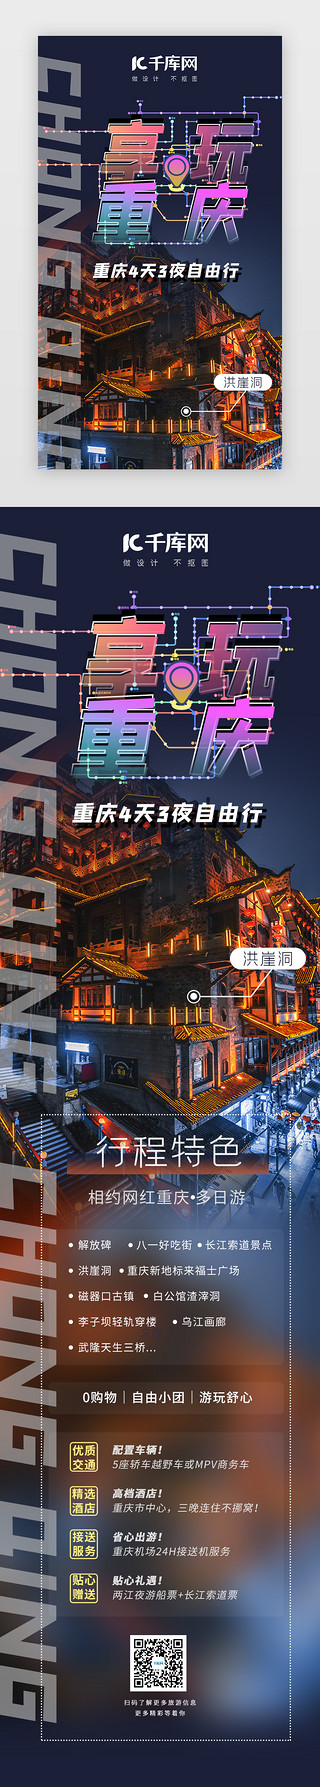 重庆特色贺卡UI设计素材_享玩重庆旅游